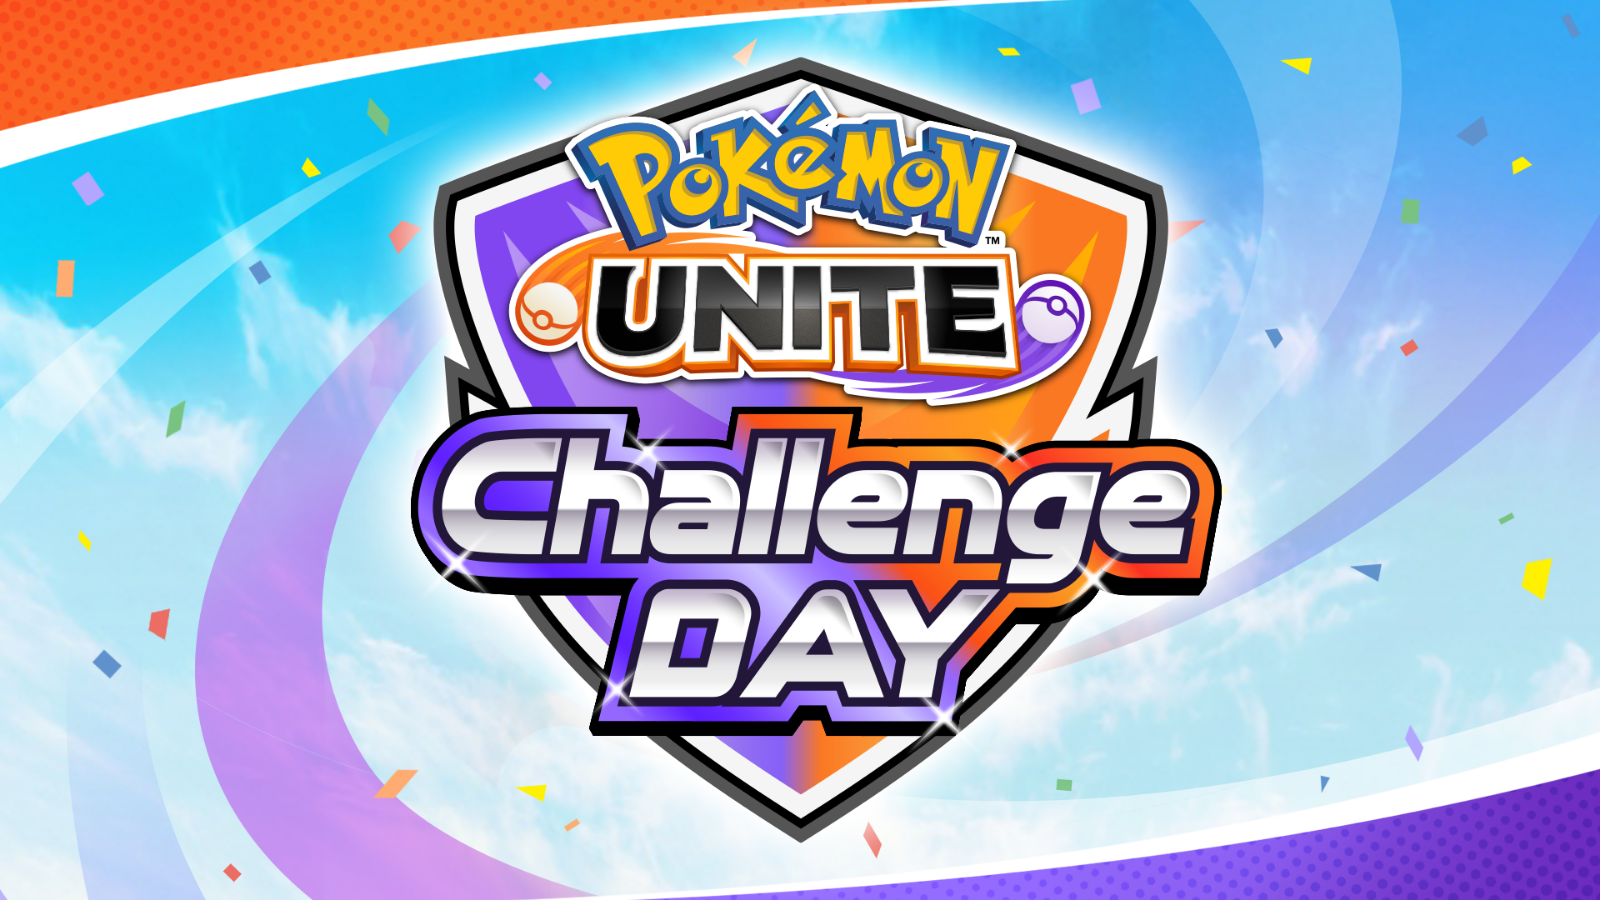 【大会情報】Pokémon UNITE Challenge DAY 08.14 スイスドロー形式 個人参加制【2022年8月14日】